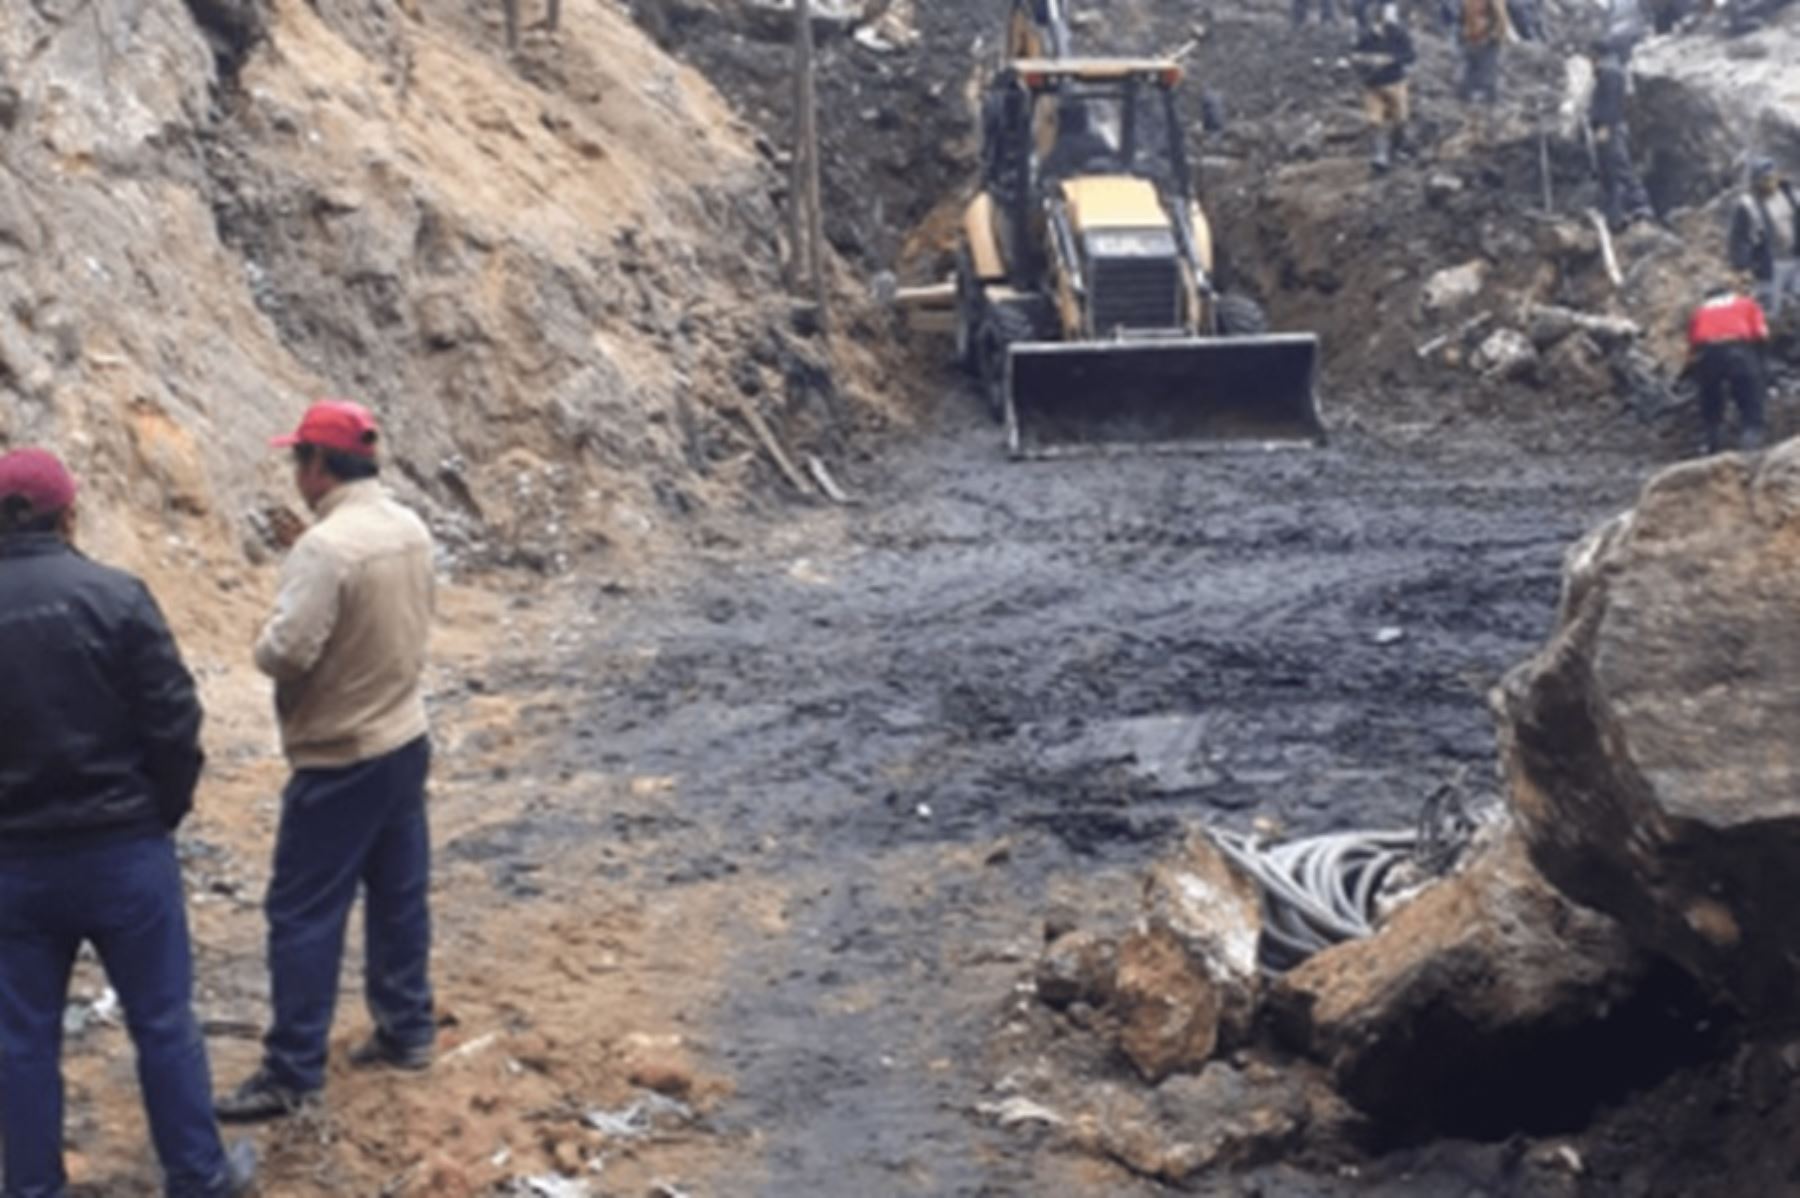 Al menos cinco personas quedaron atrapadas tras registrarse esta madrugada el derrumbe en el interior del socavón de una presunta mina informal ubicada en el caserío de Llaray, distrito de Quiruvilca, provincia de Santiago de Chuco, departamento de La Libertad.